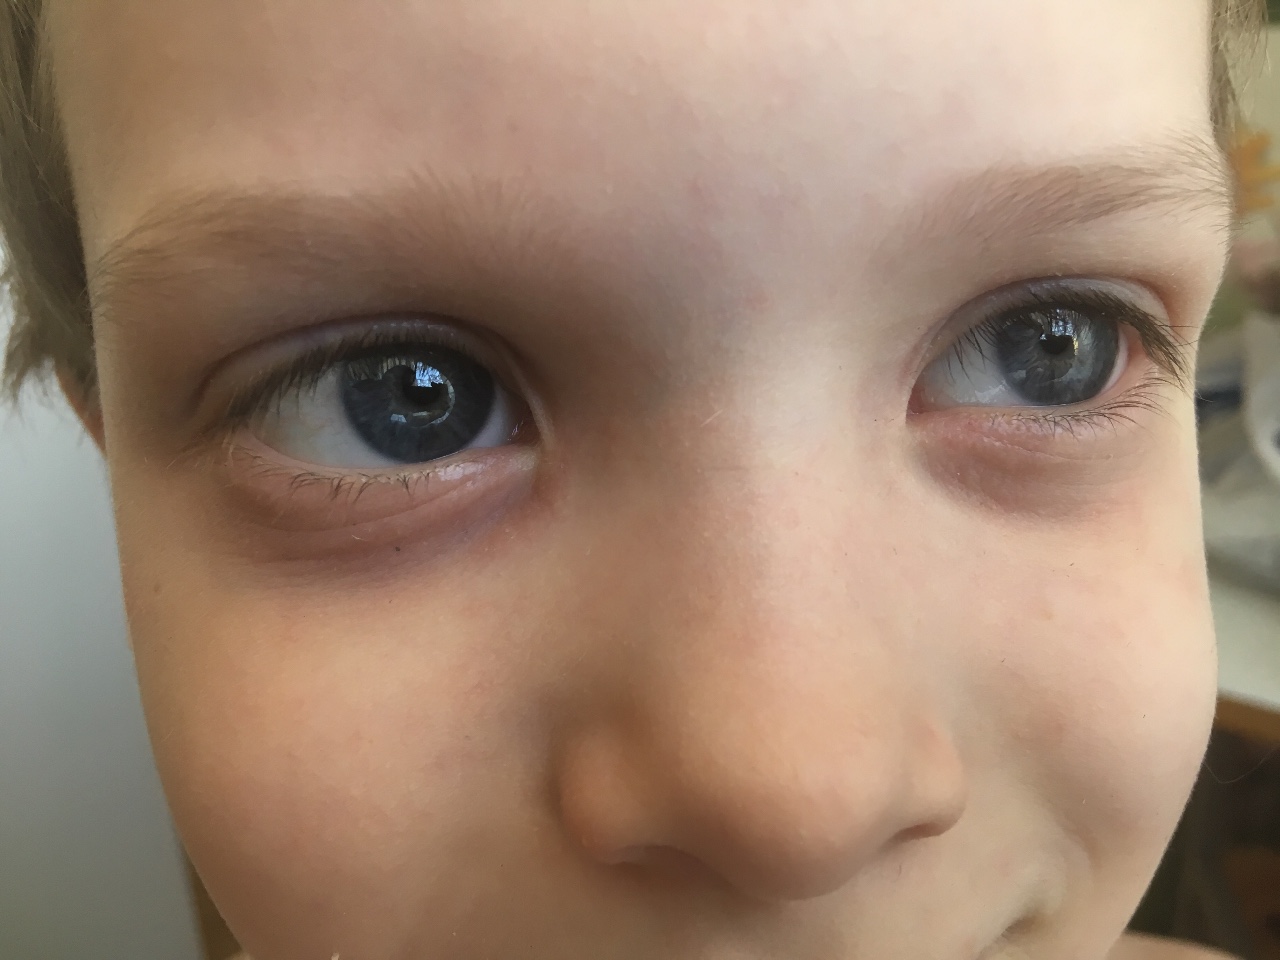 Почему у ребенка голубые глаза. Синячки под глазами у ребенка. Синякитподтшлазами у ребенка. Синие круги под глазами у ребенка.